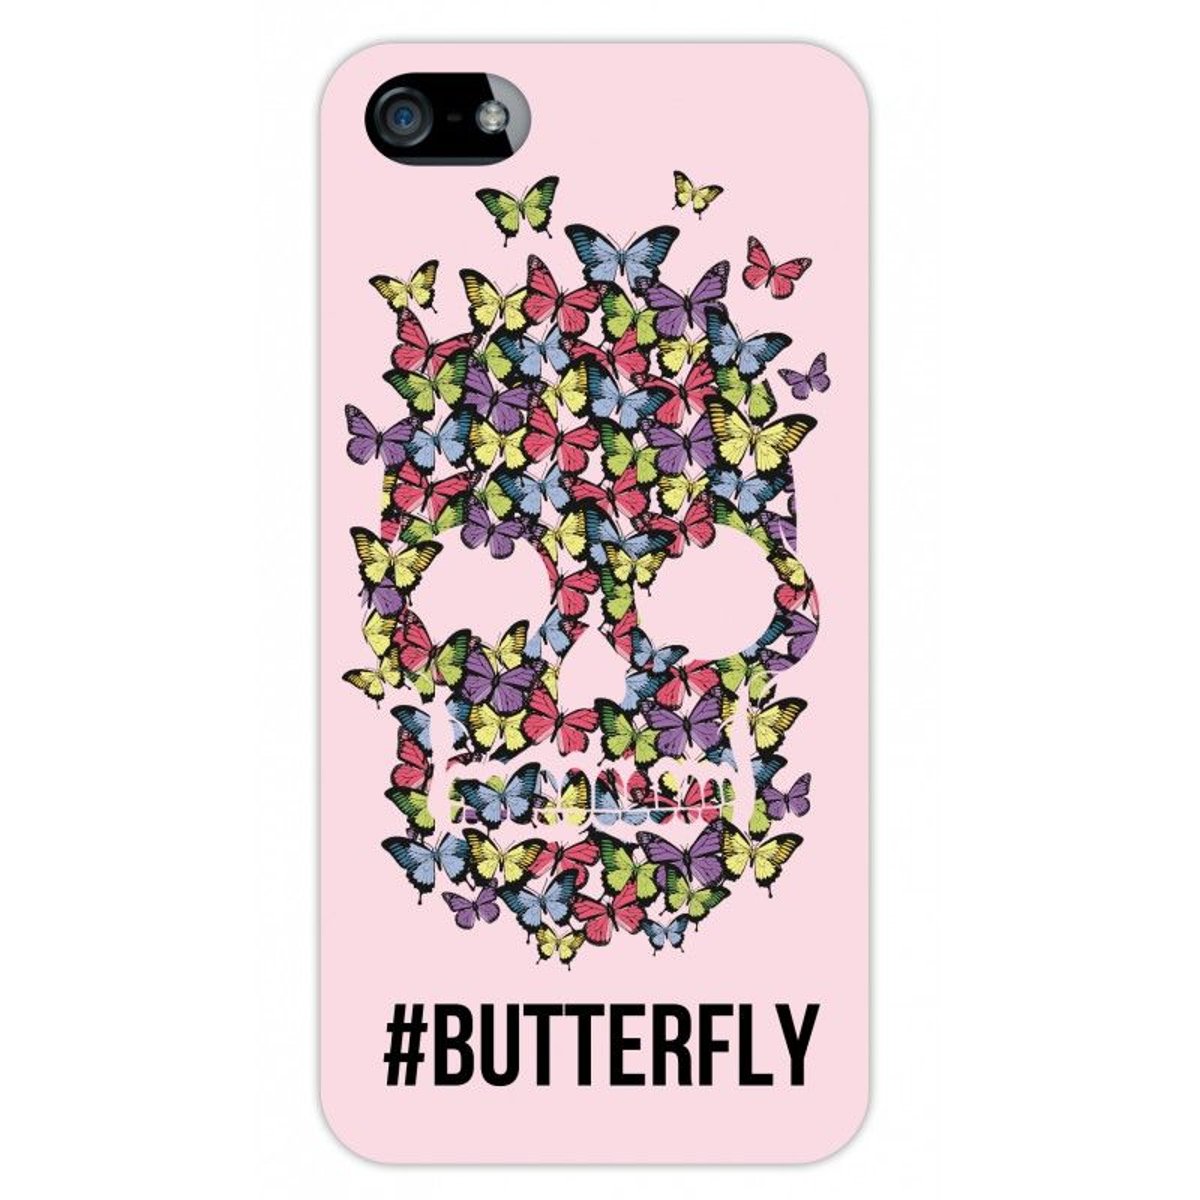 Coque iPhone SE / 5S / 5 rigide transparente, Butterfly, Evetane®